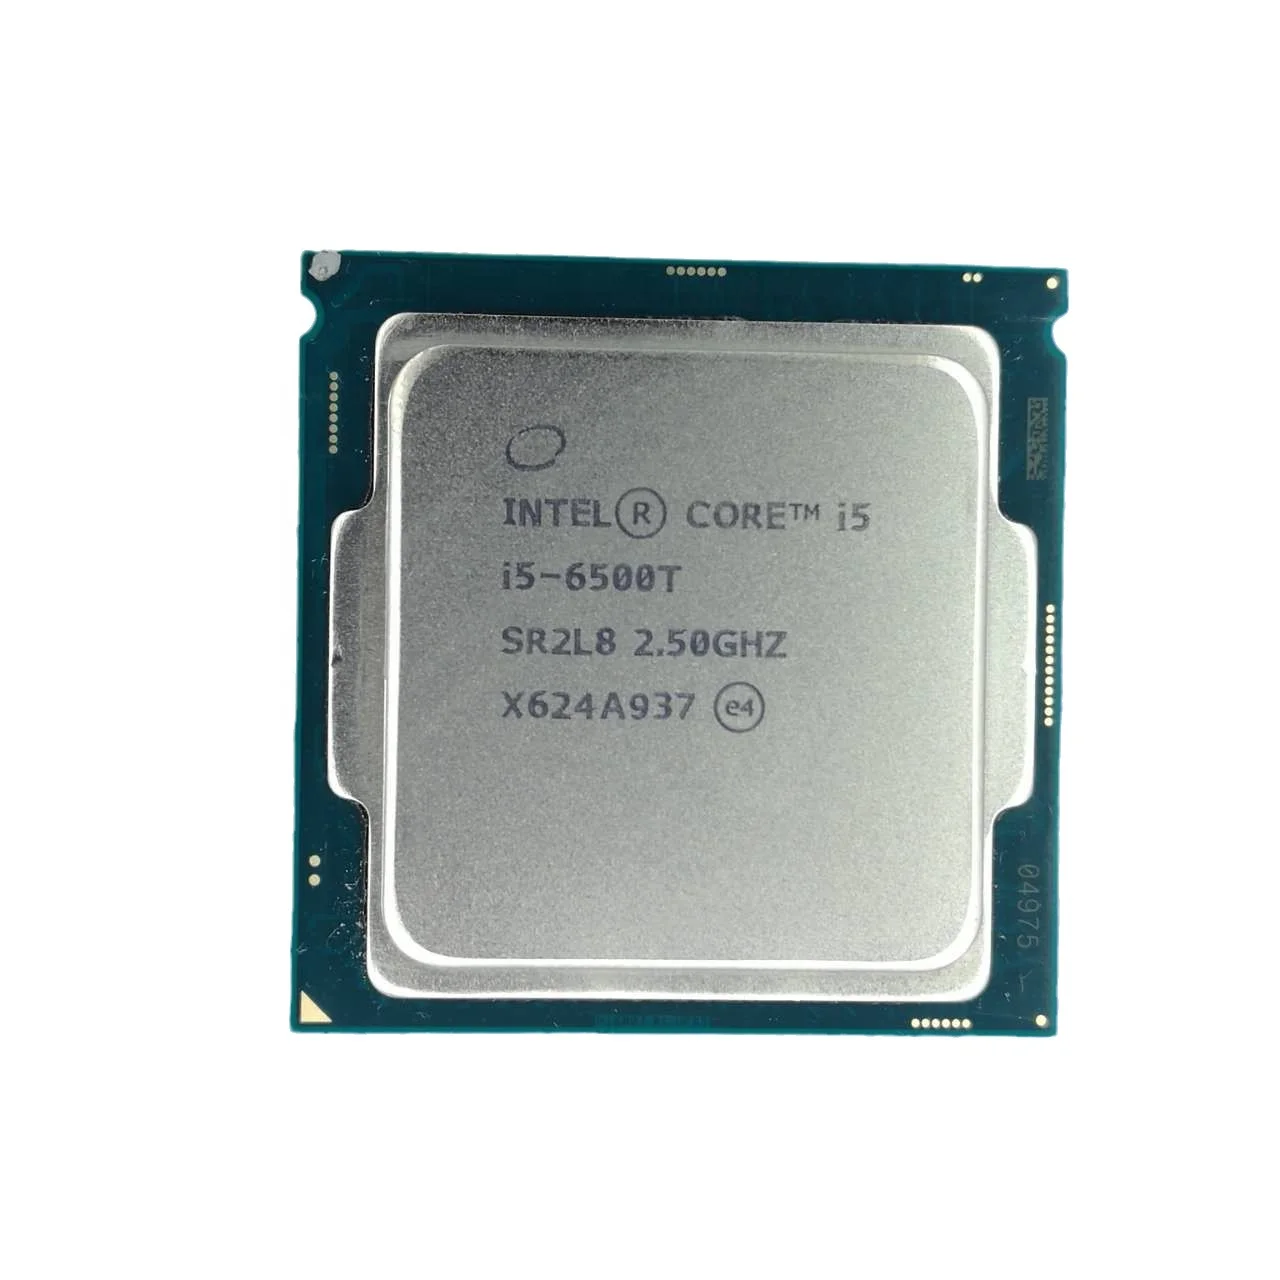 Pentium g4600 gta 5 фото 83